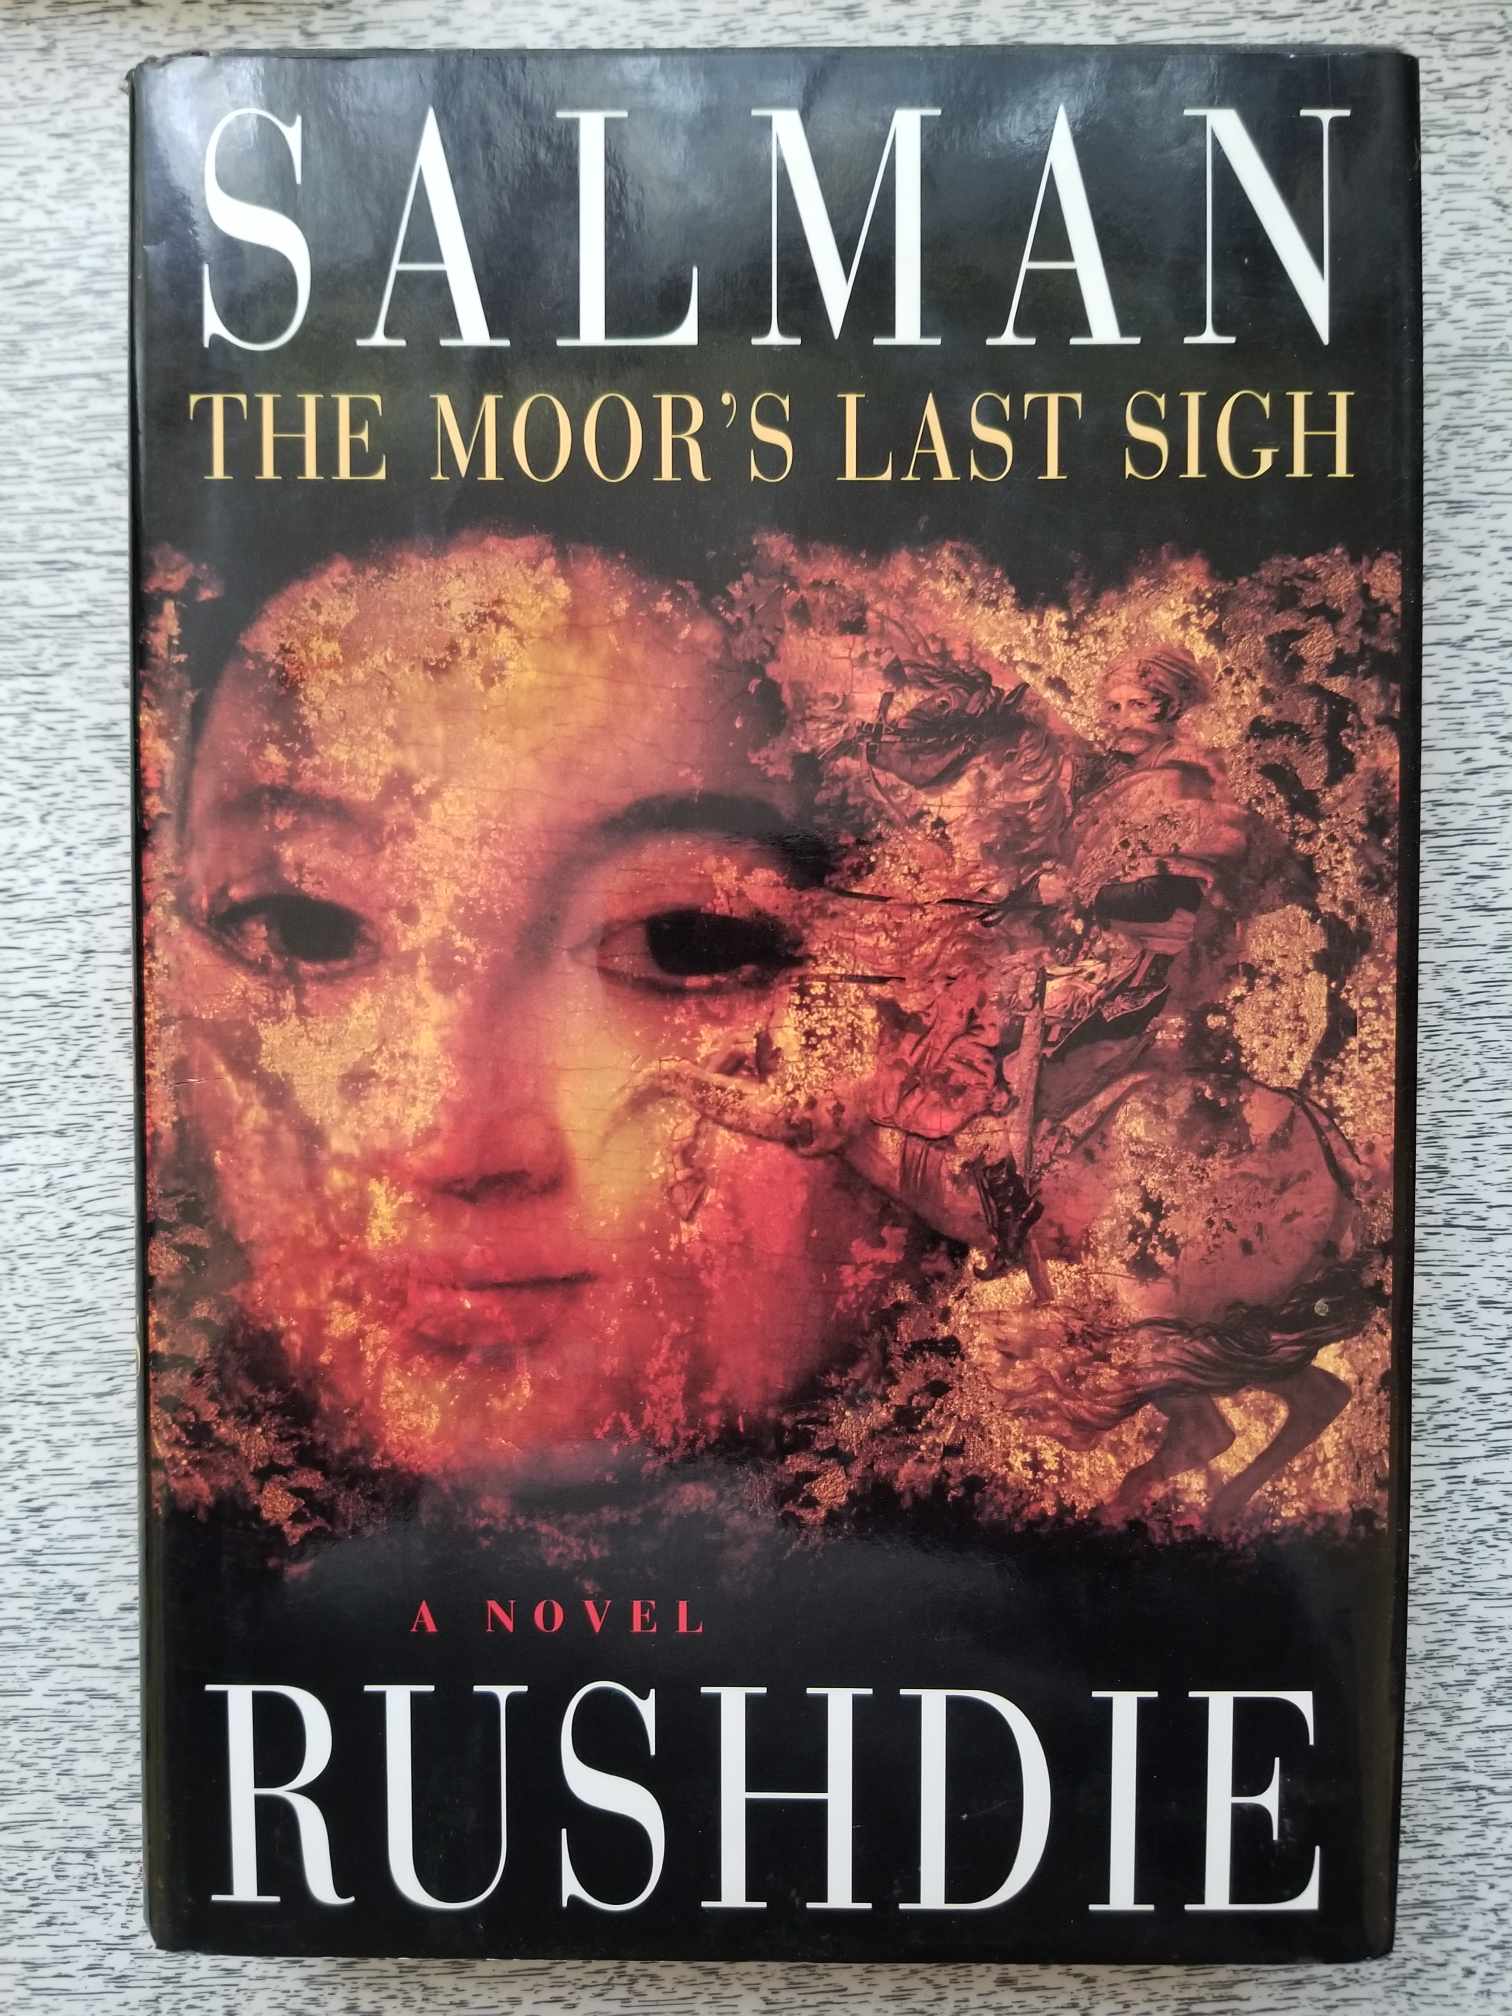 The Moor's Last Sigh by Salman Rushdie